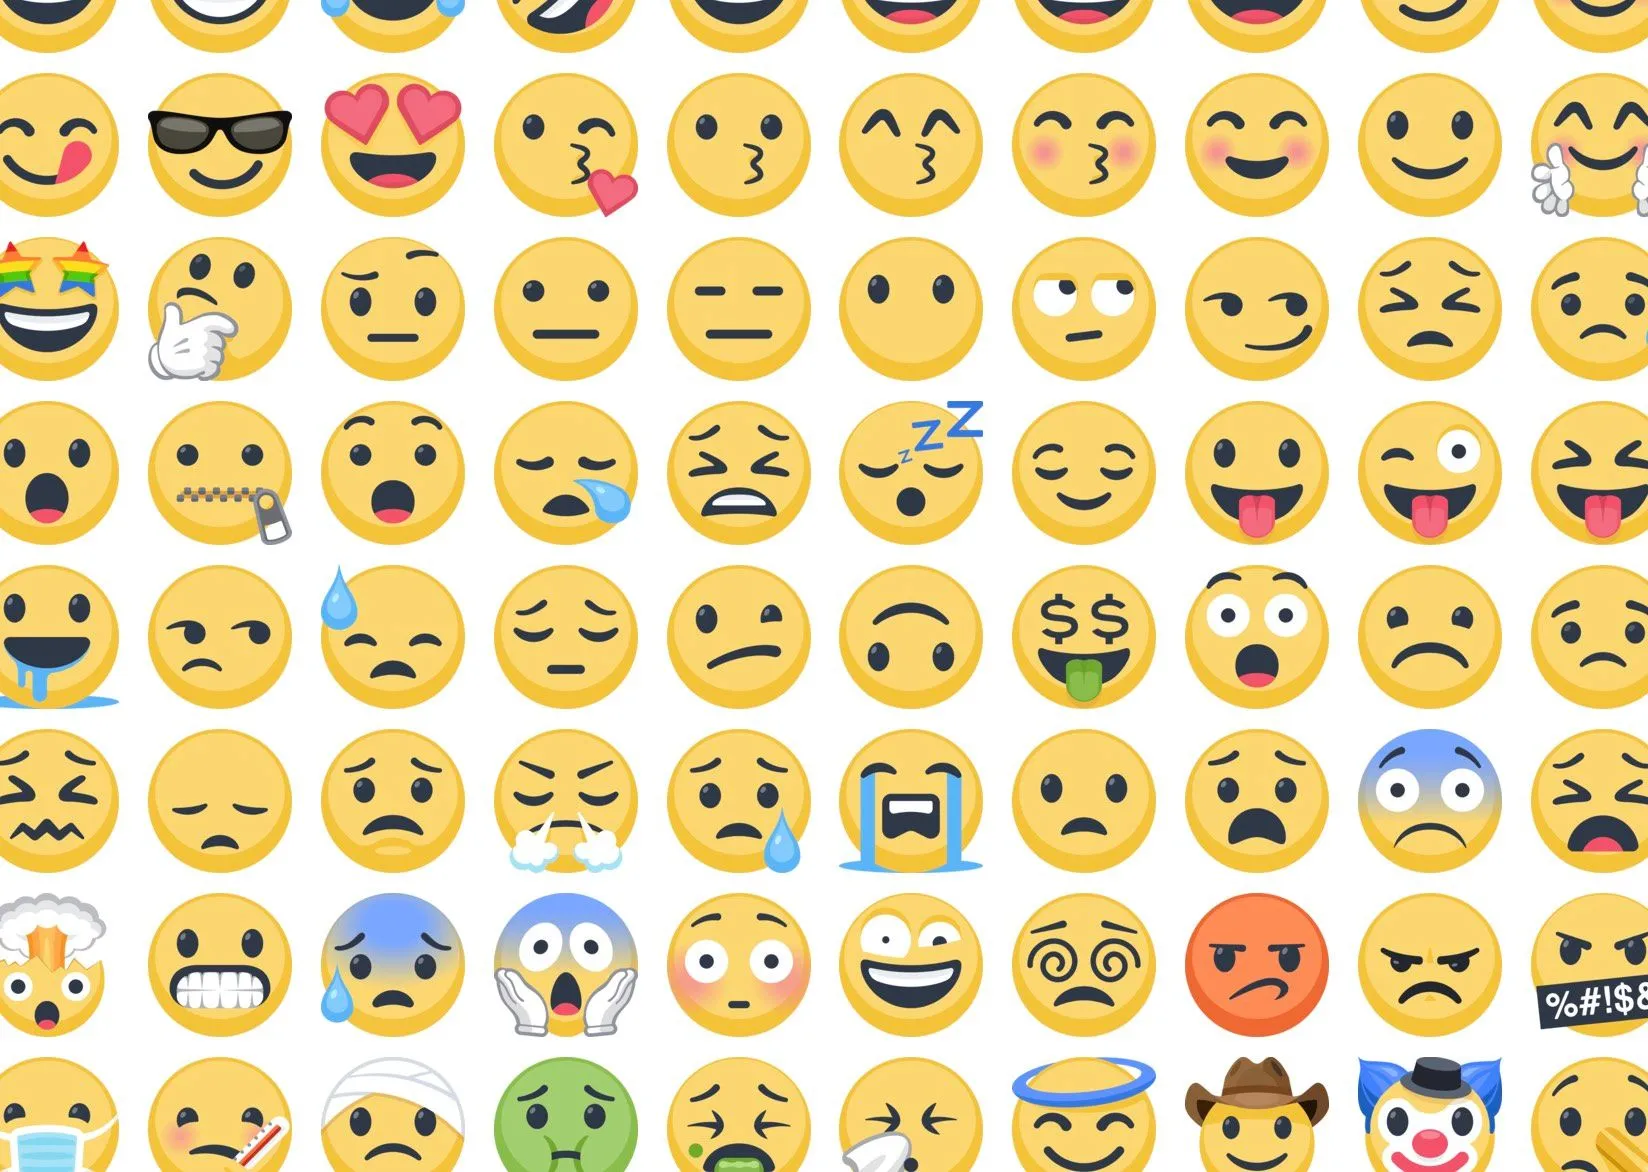 Emojis diversos utilizados nas redes sociais